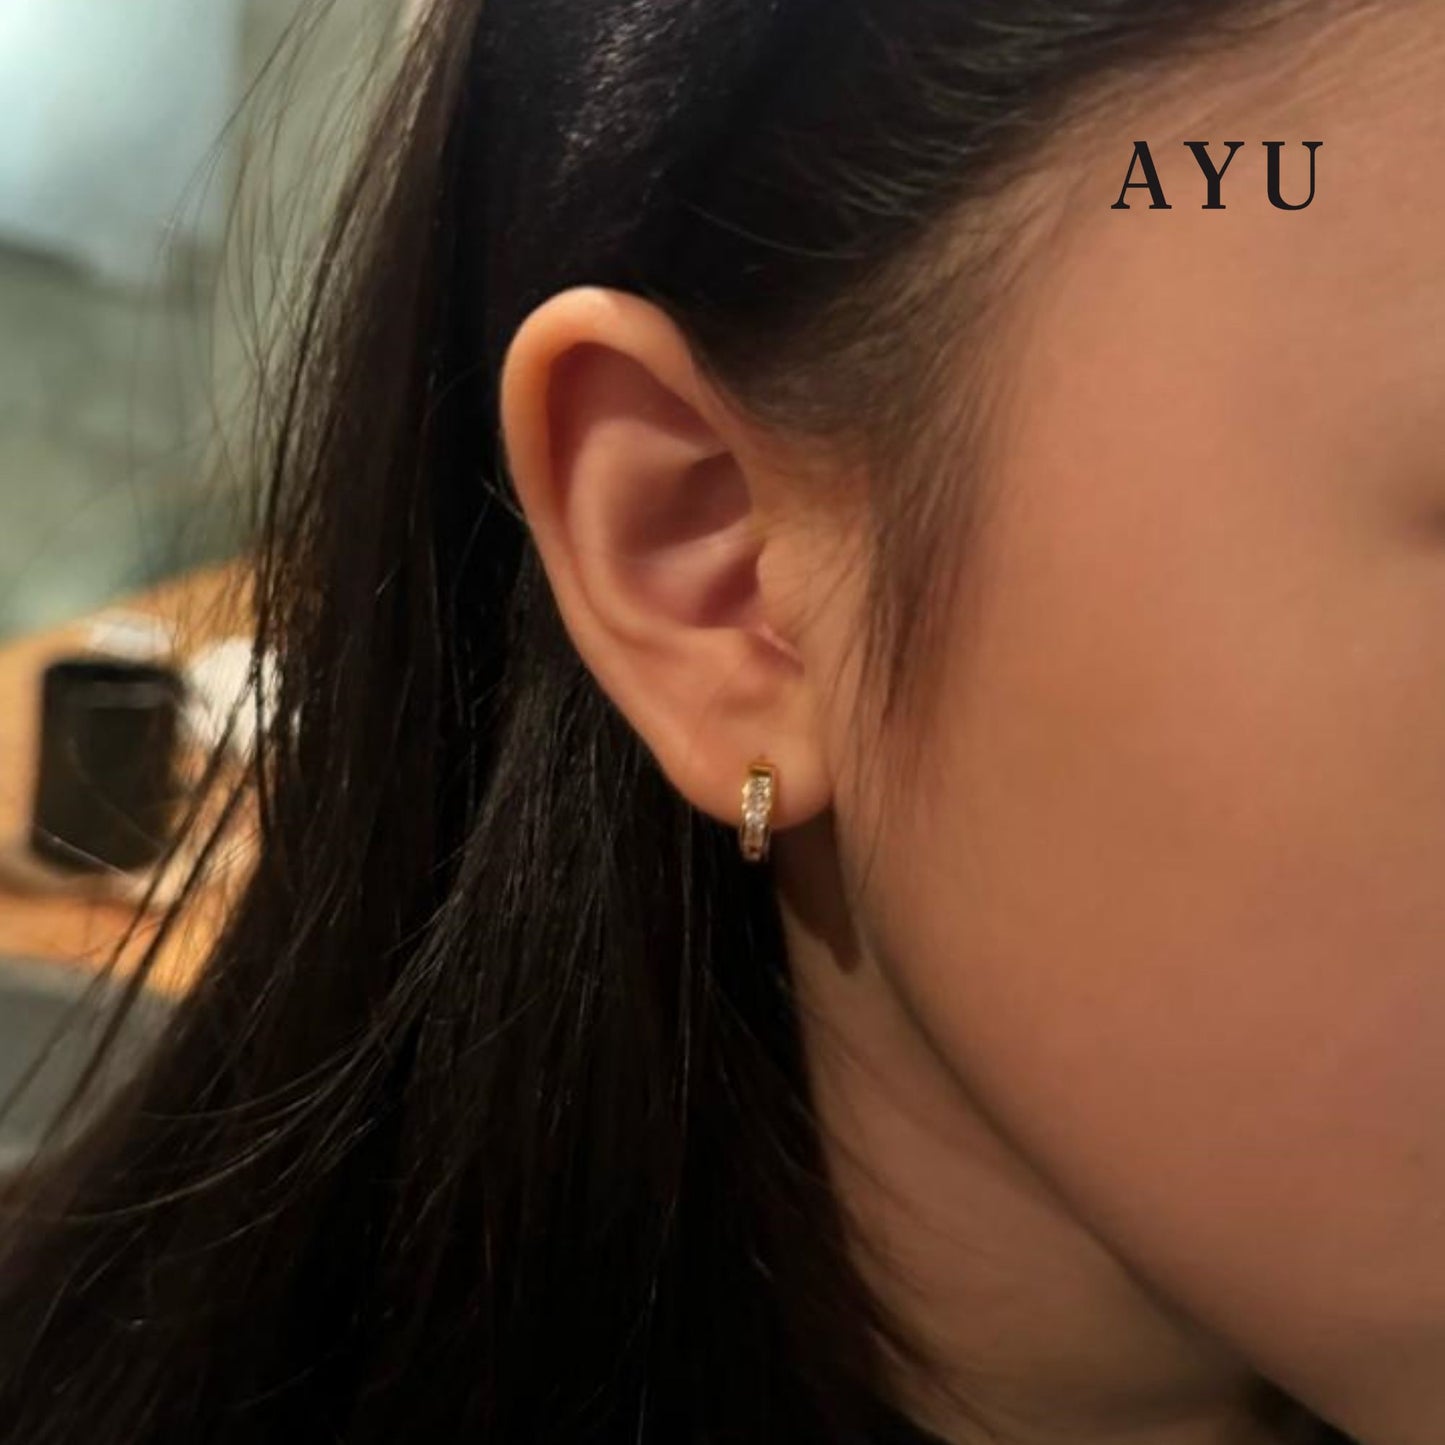 AYU Princess Cut Doughnut Earrings 17k Rose Gold